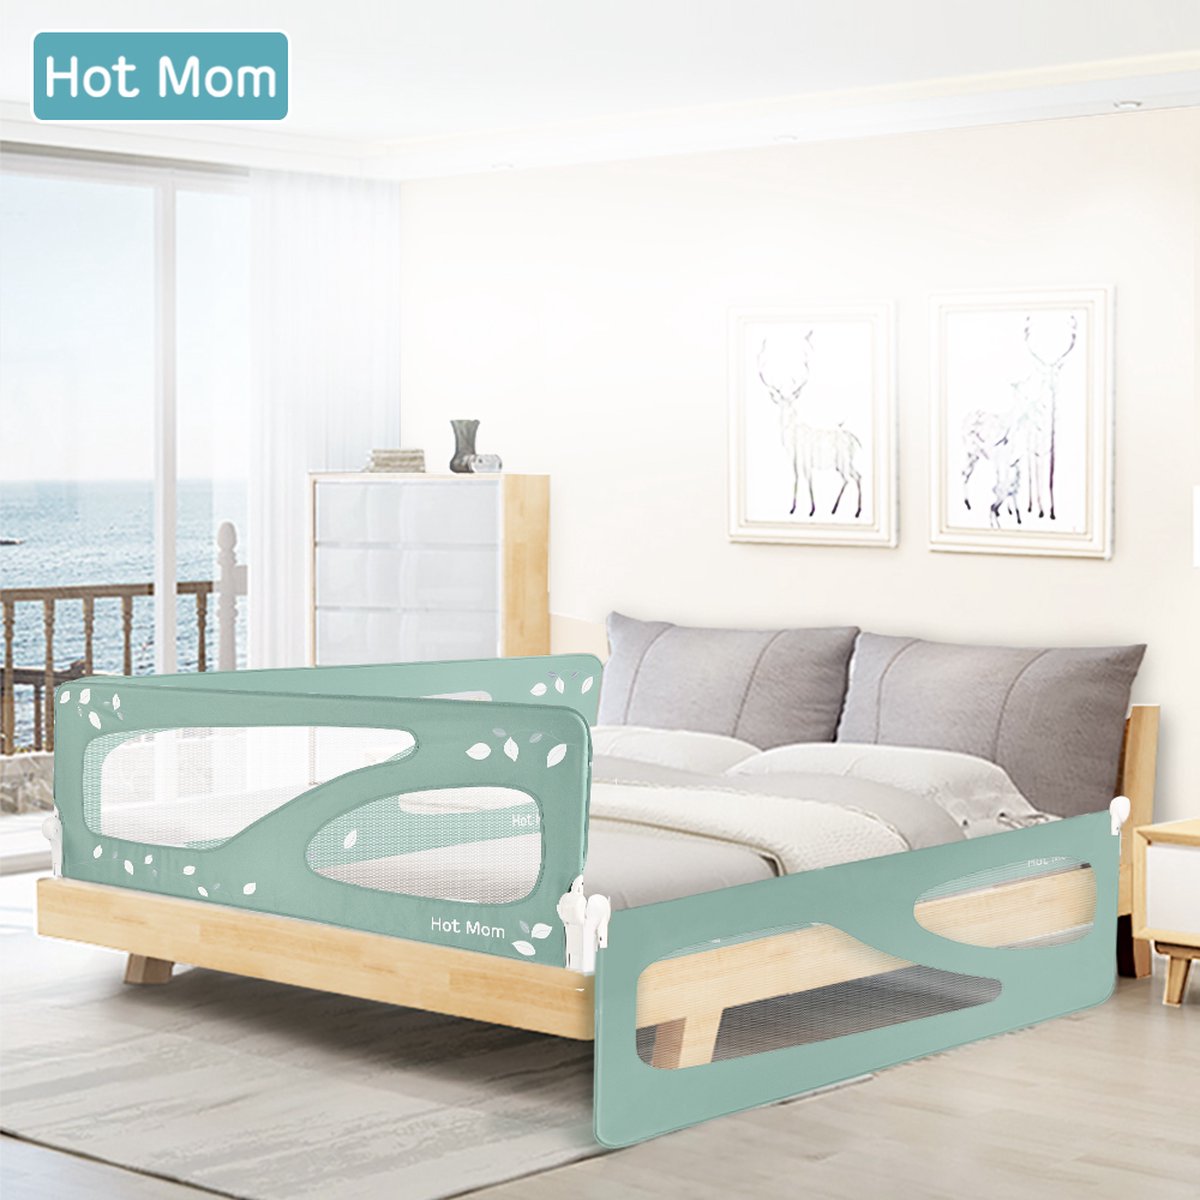 Tour de lit Hot Mom - 150 x 64 cm - Tour de lit Bébé - Vert | bol.com